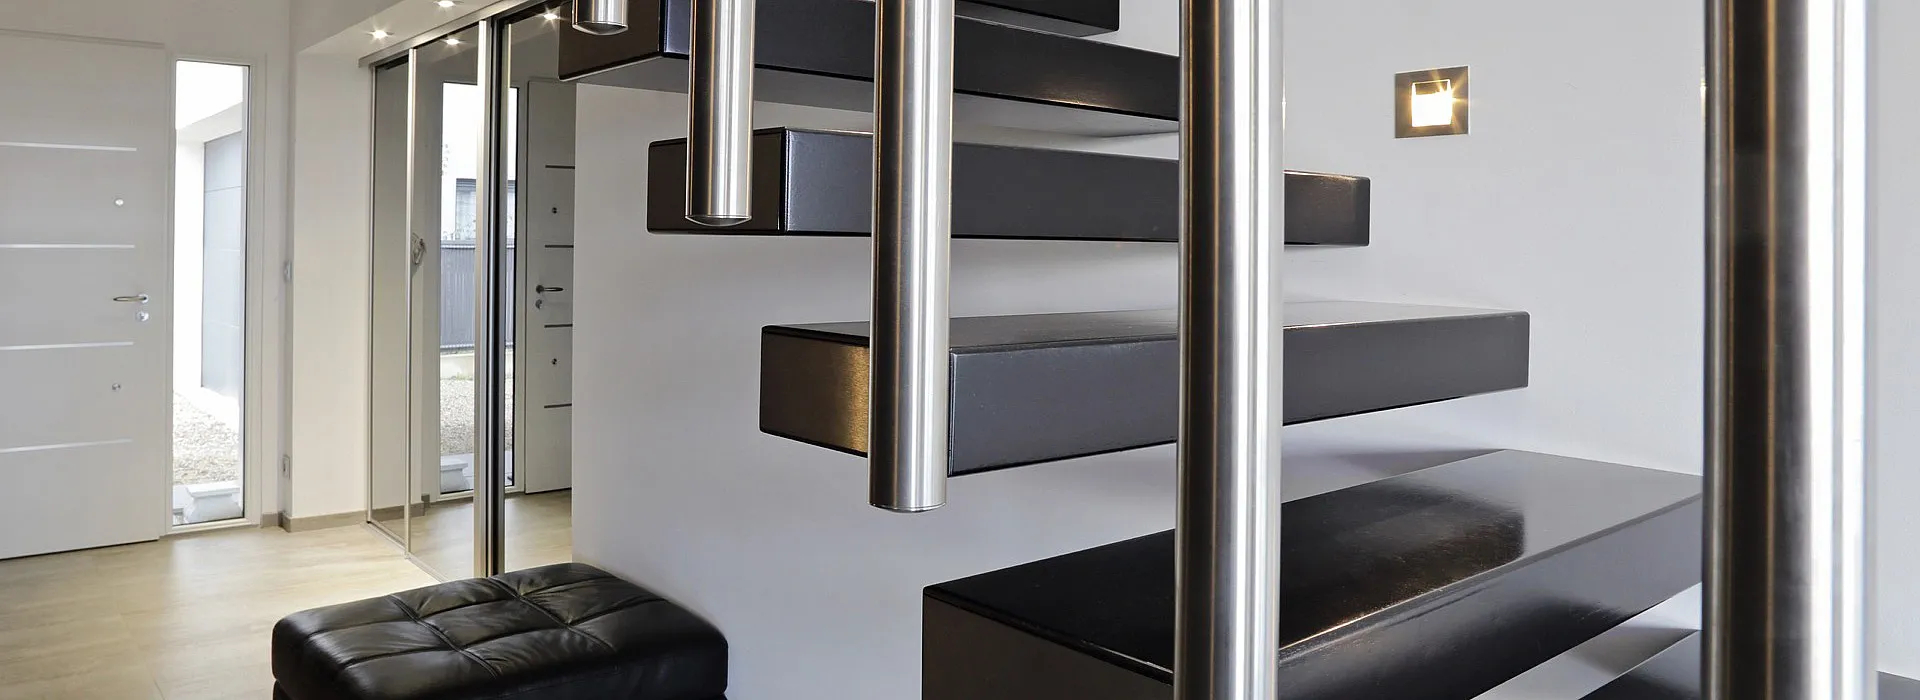 Modernes und minimalistisches indoor Treppengeländer aus Stahl mit senkrechten Geländerstäben.